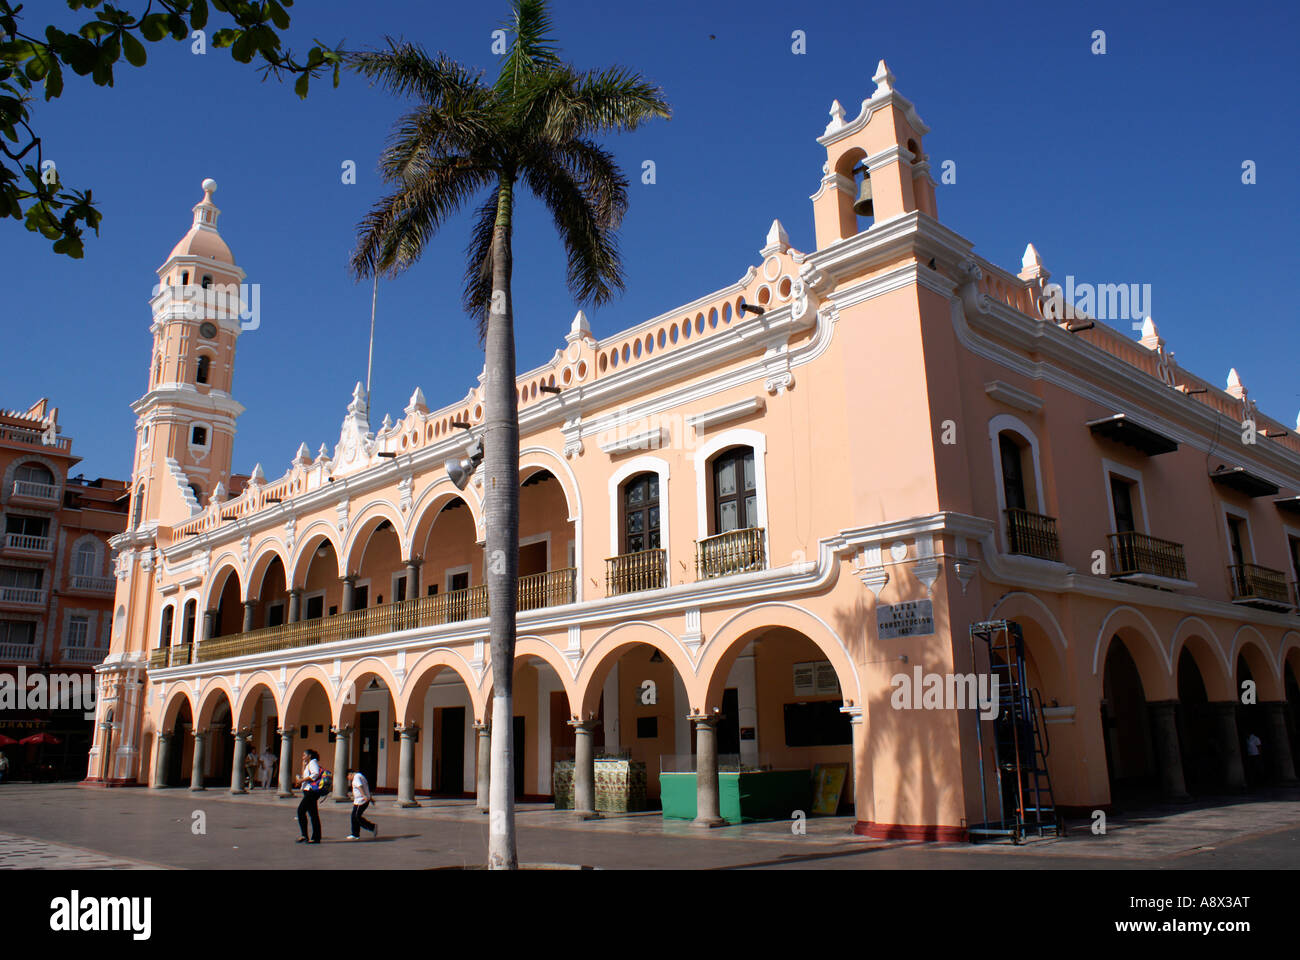 The Palacio Municipal or Government Palace on the Zocalo or Plaza de Armas in the city of Veracruz, Mexico Stock Photo